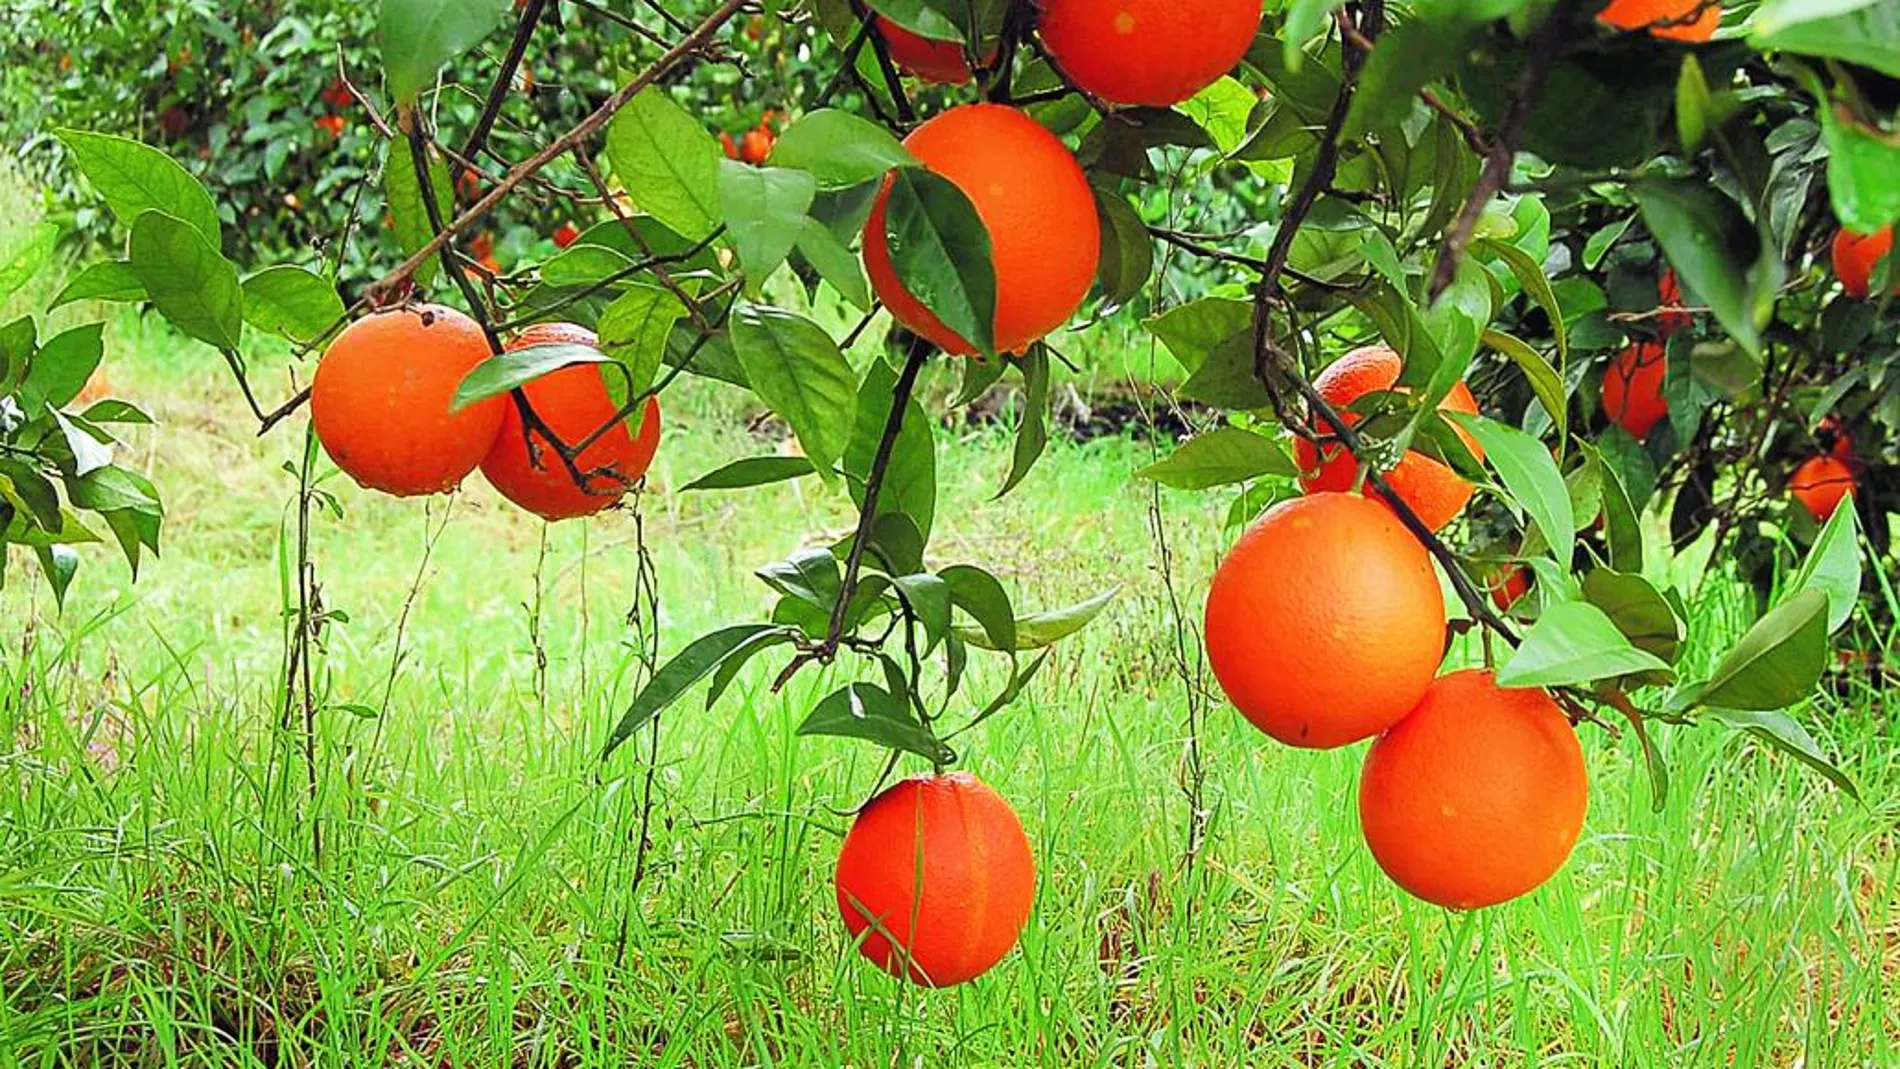 Un naranjal para conocer: La agricultura ecológica de cerca